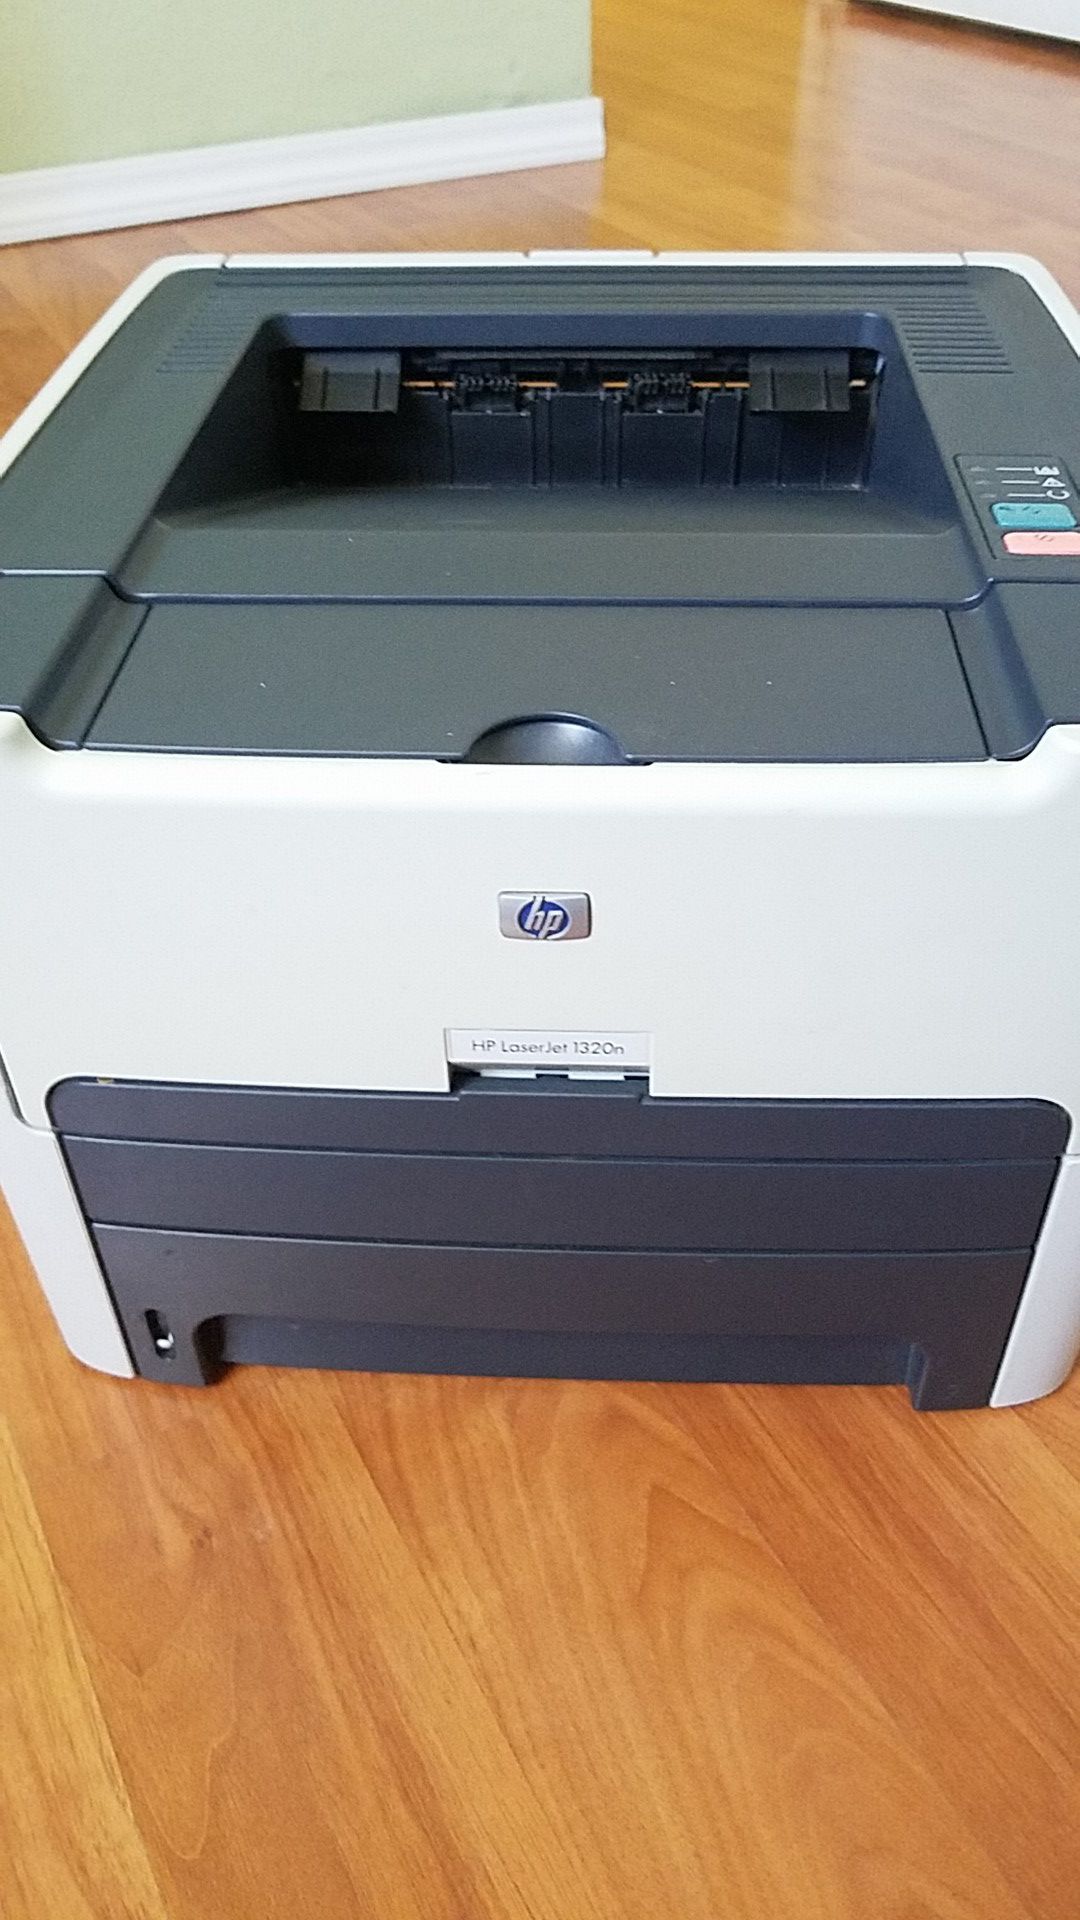 HP printer 1320n for Sale in Phoenix,